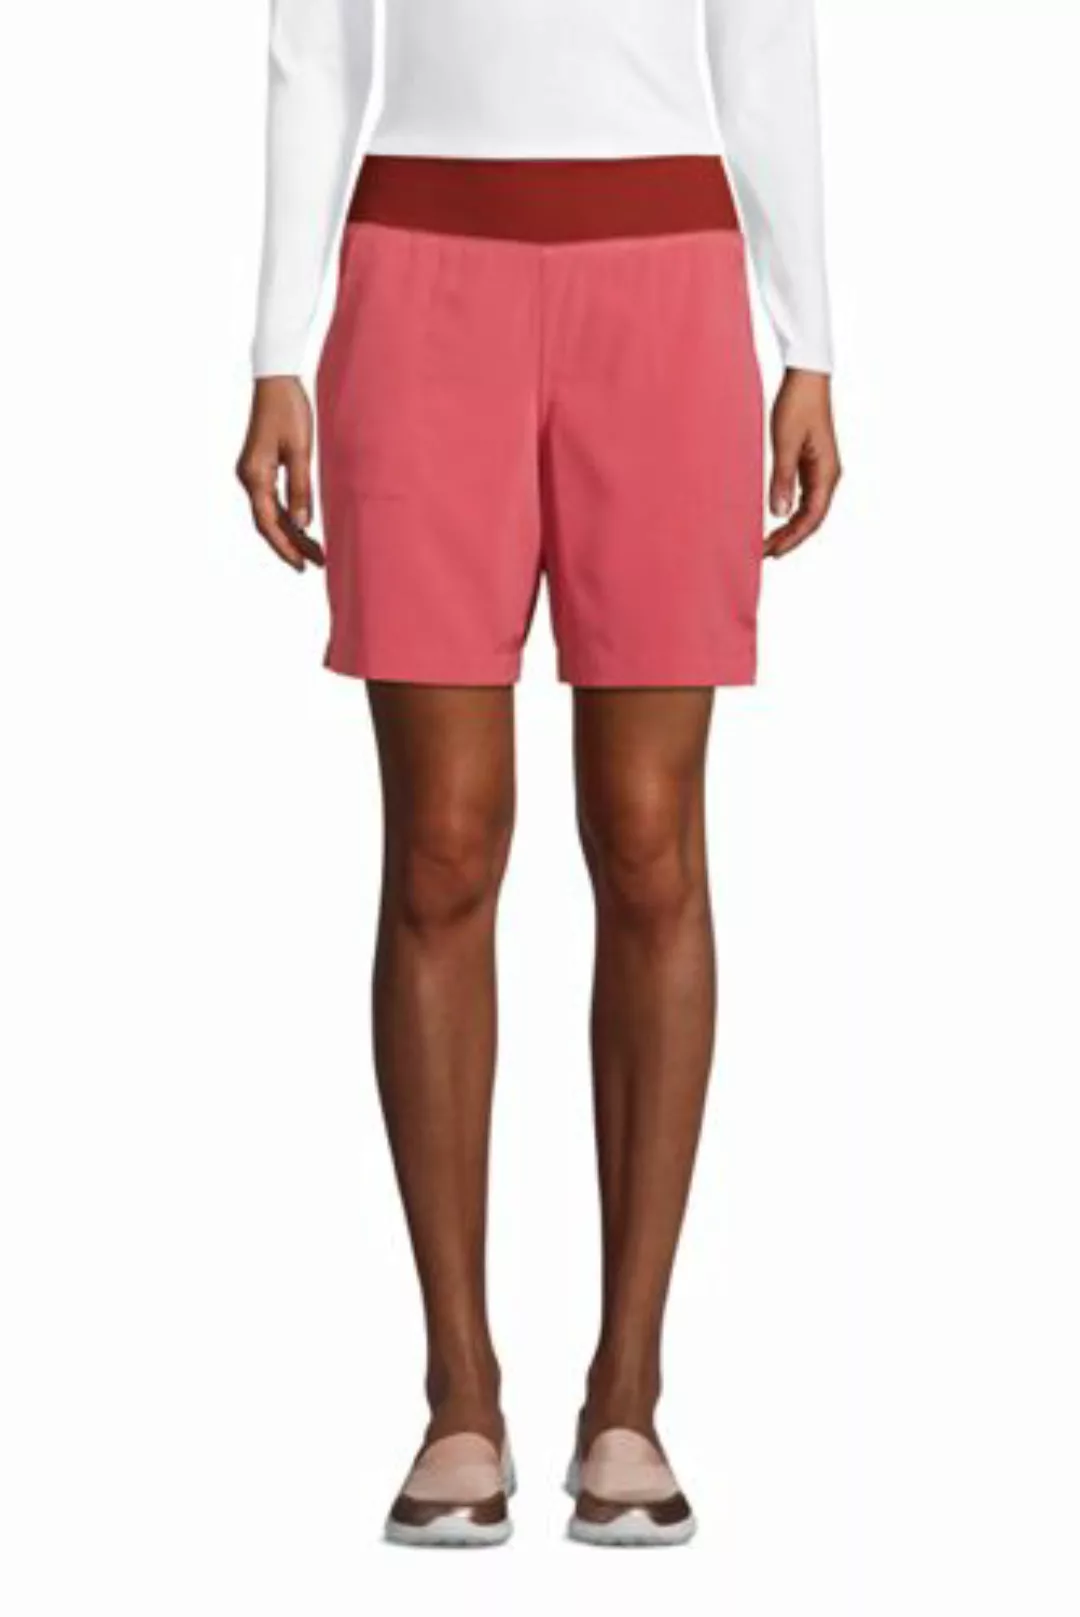 High Waist Shorts ACTIVE, Damen, Größe: M Normal, Rot, Polyester-Mischung, günstig online kaufen